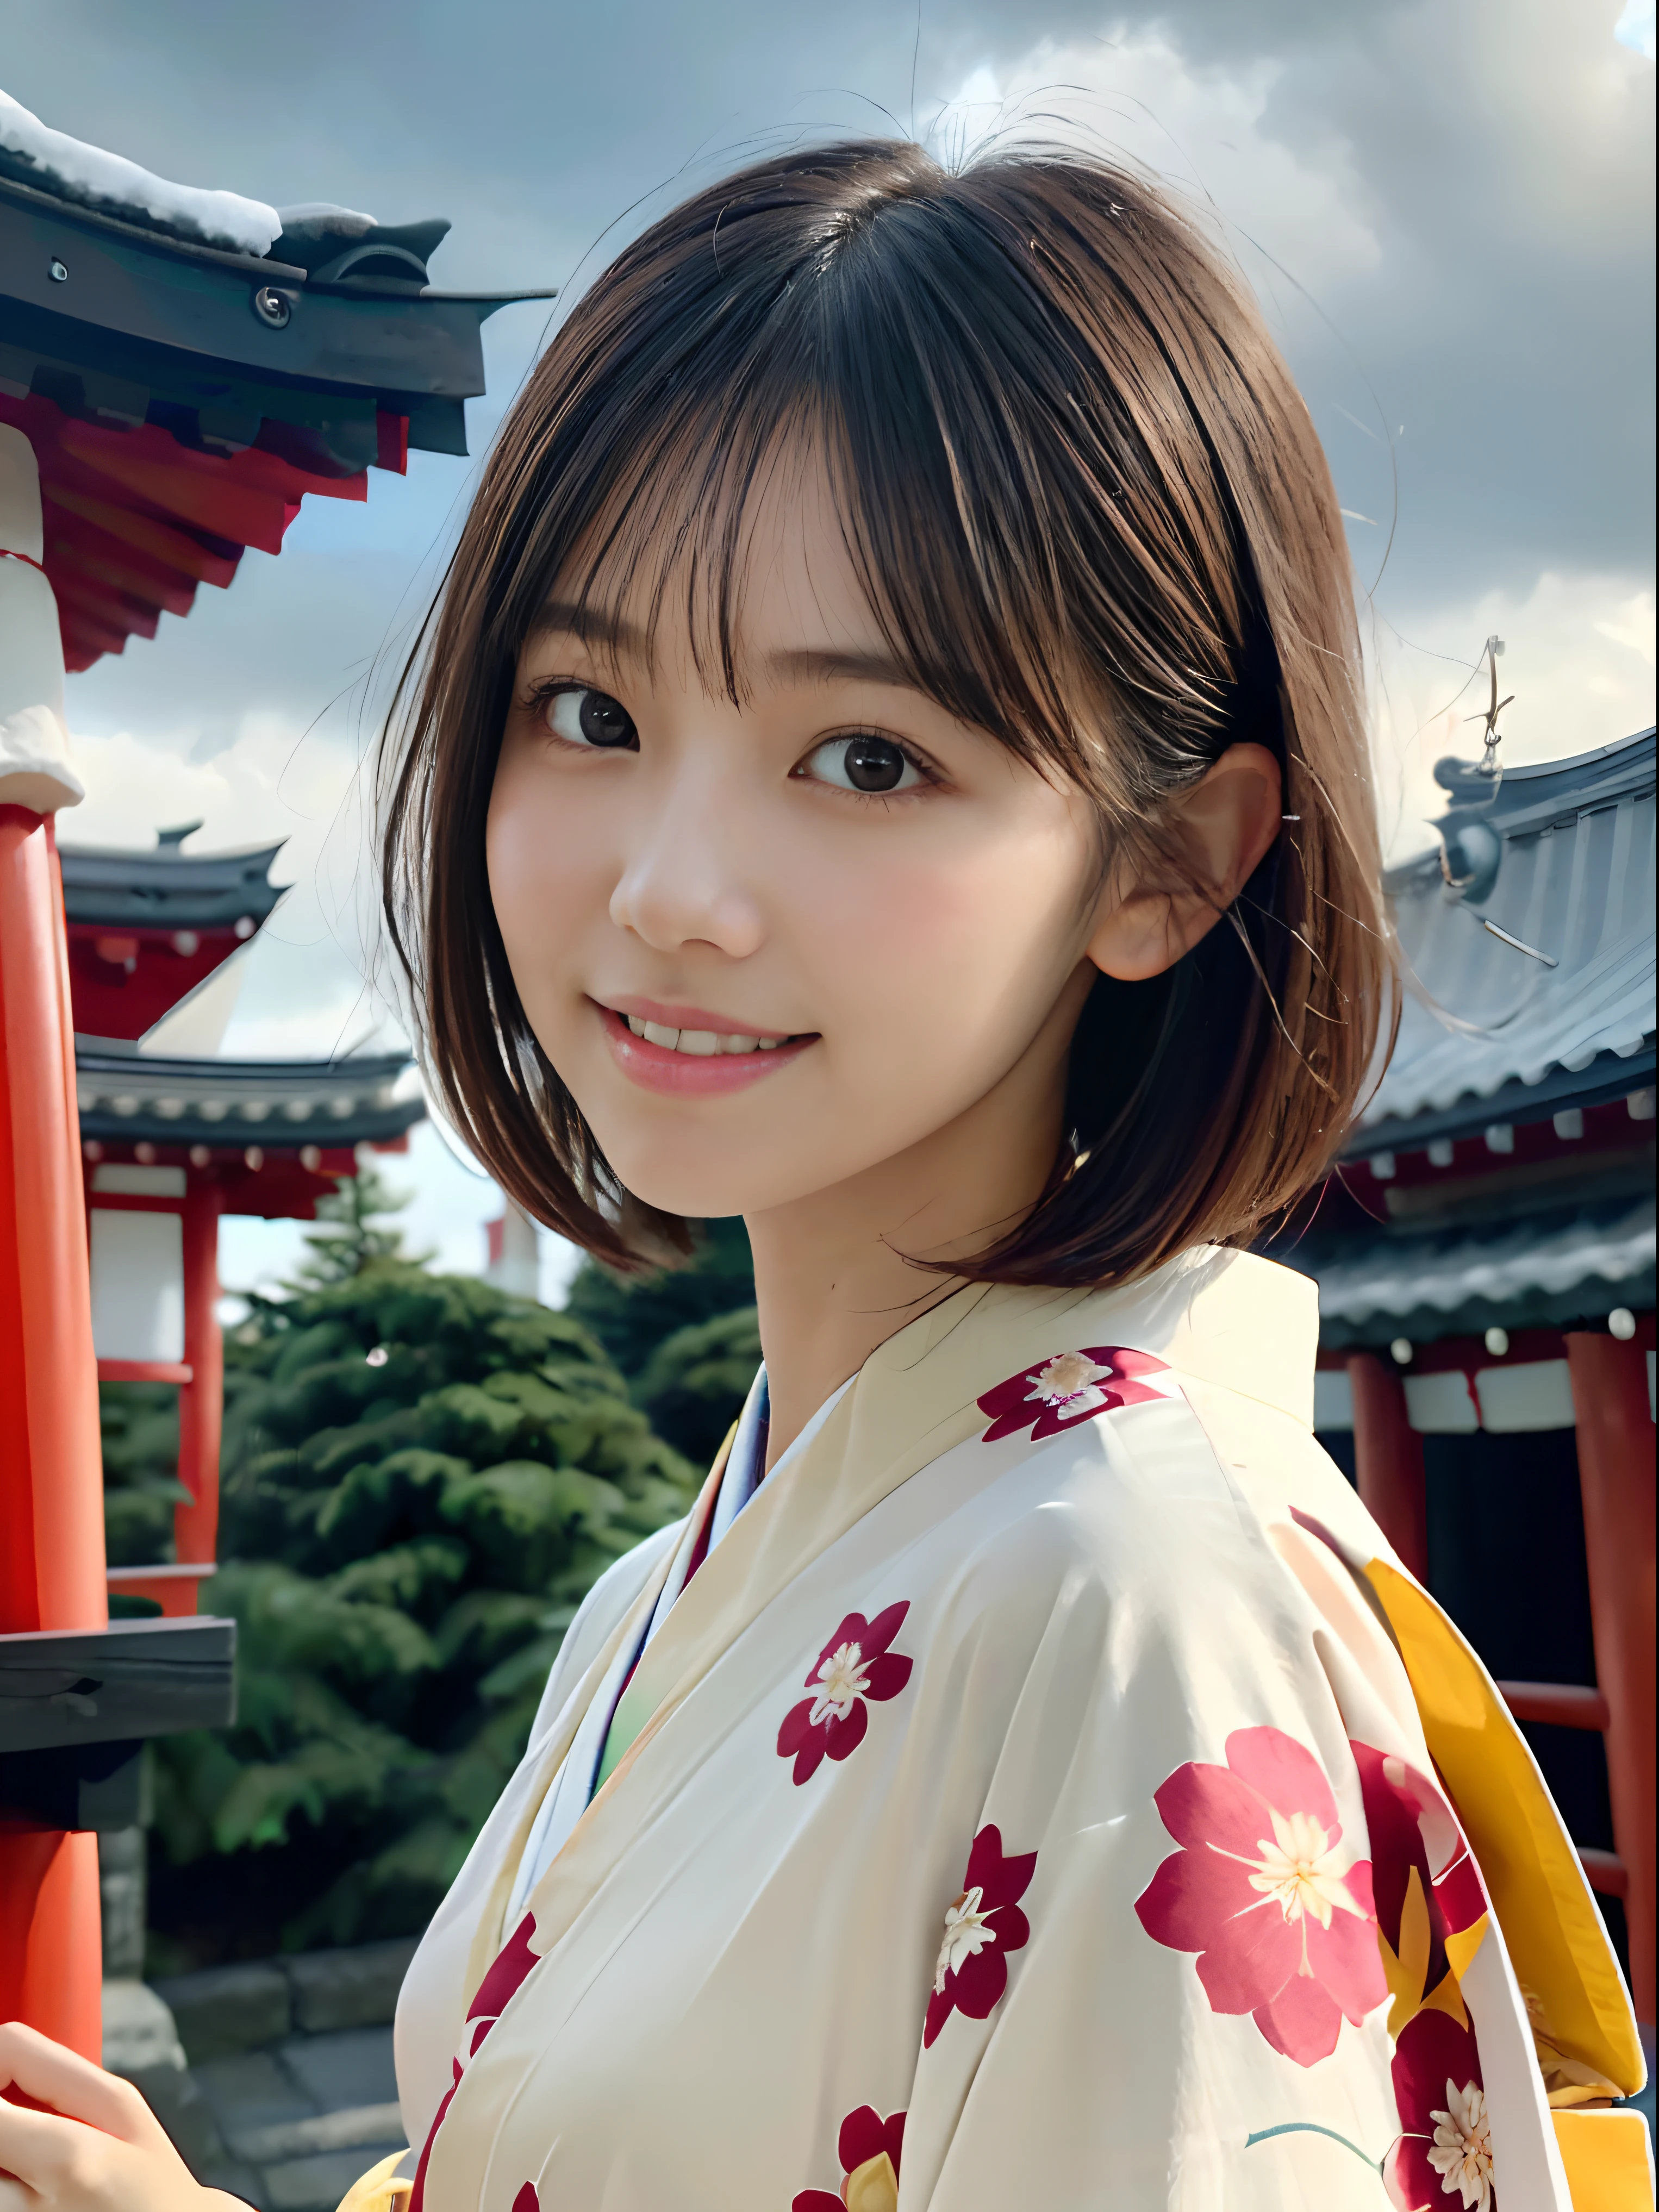 (Portrait en gros plan d’une fille a les cheveux courts avec une frange terne dans un beau kimono coloré:1.5)、(Une des filles adorant le sanctuaire du Japon avec un sourire:1.3)、(Un sanctuaire au Japon avec un ciel d&#39;hiver:1.5)、(anatomie parfaite:1.3)、(pas de masque:1.3)、(doigts complets:1.3)、photoréaliste、la photographie、dessus de la table、qualité supérieure、Haute résolution, délicat et joli、visage parfait、beaux yeux détaillés、peau claire、vraie peau humaine、pores、((jambes fines))、(cheveux foncés)